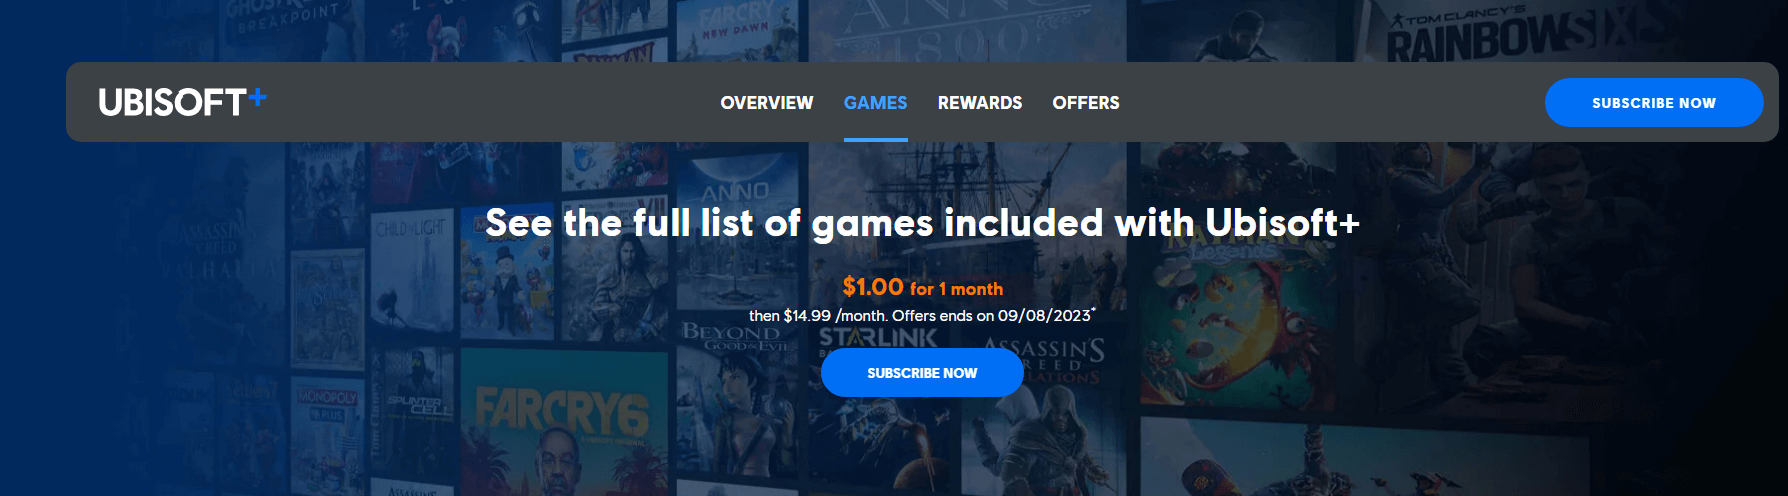 Ubisoft's $1 Subscription Promotion